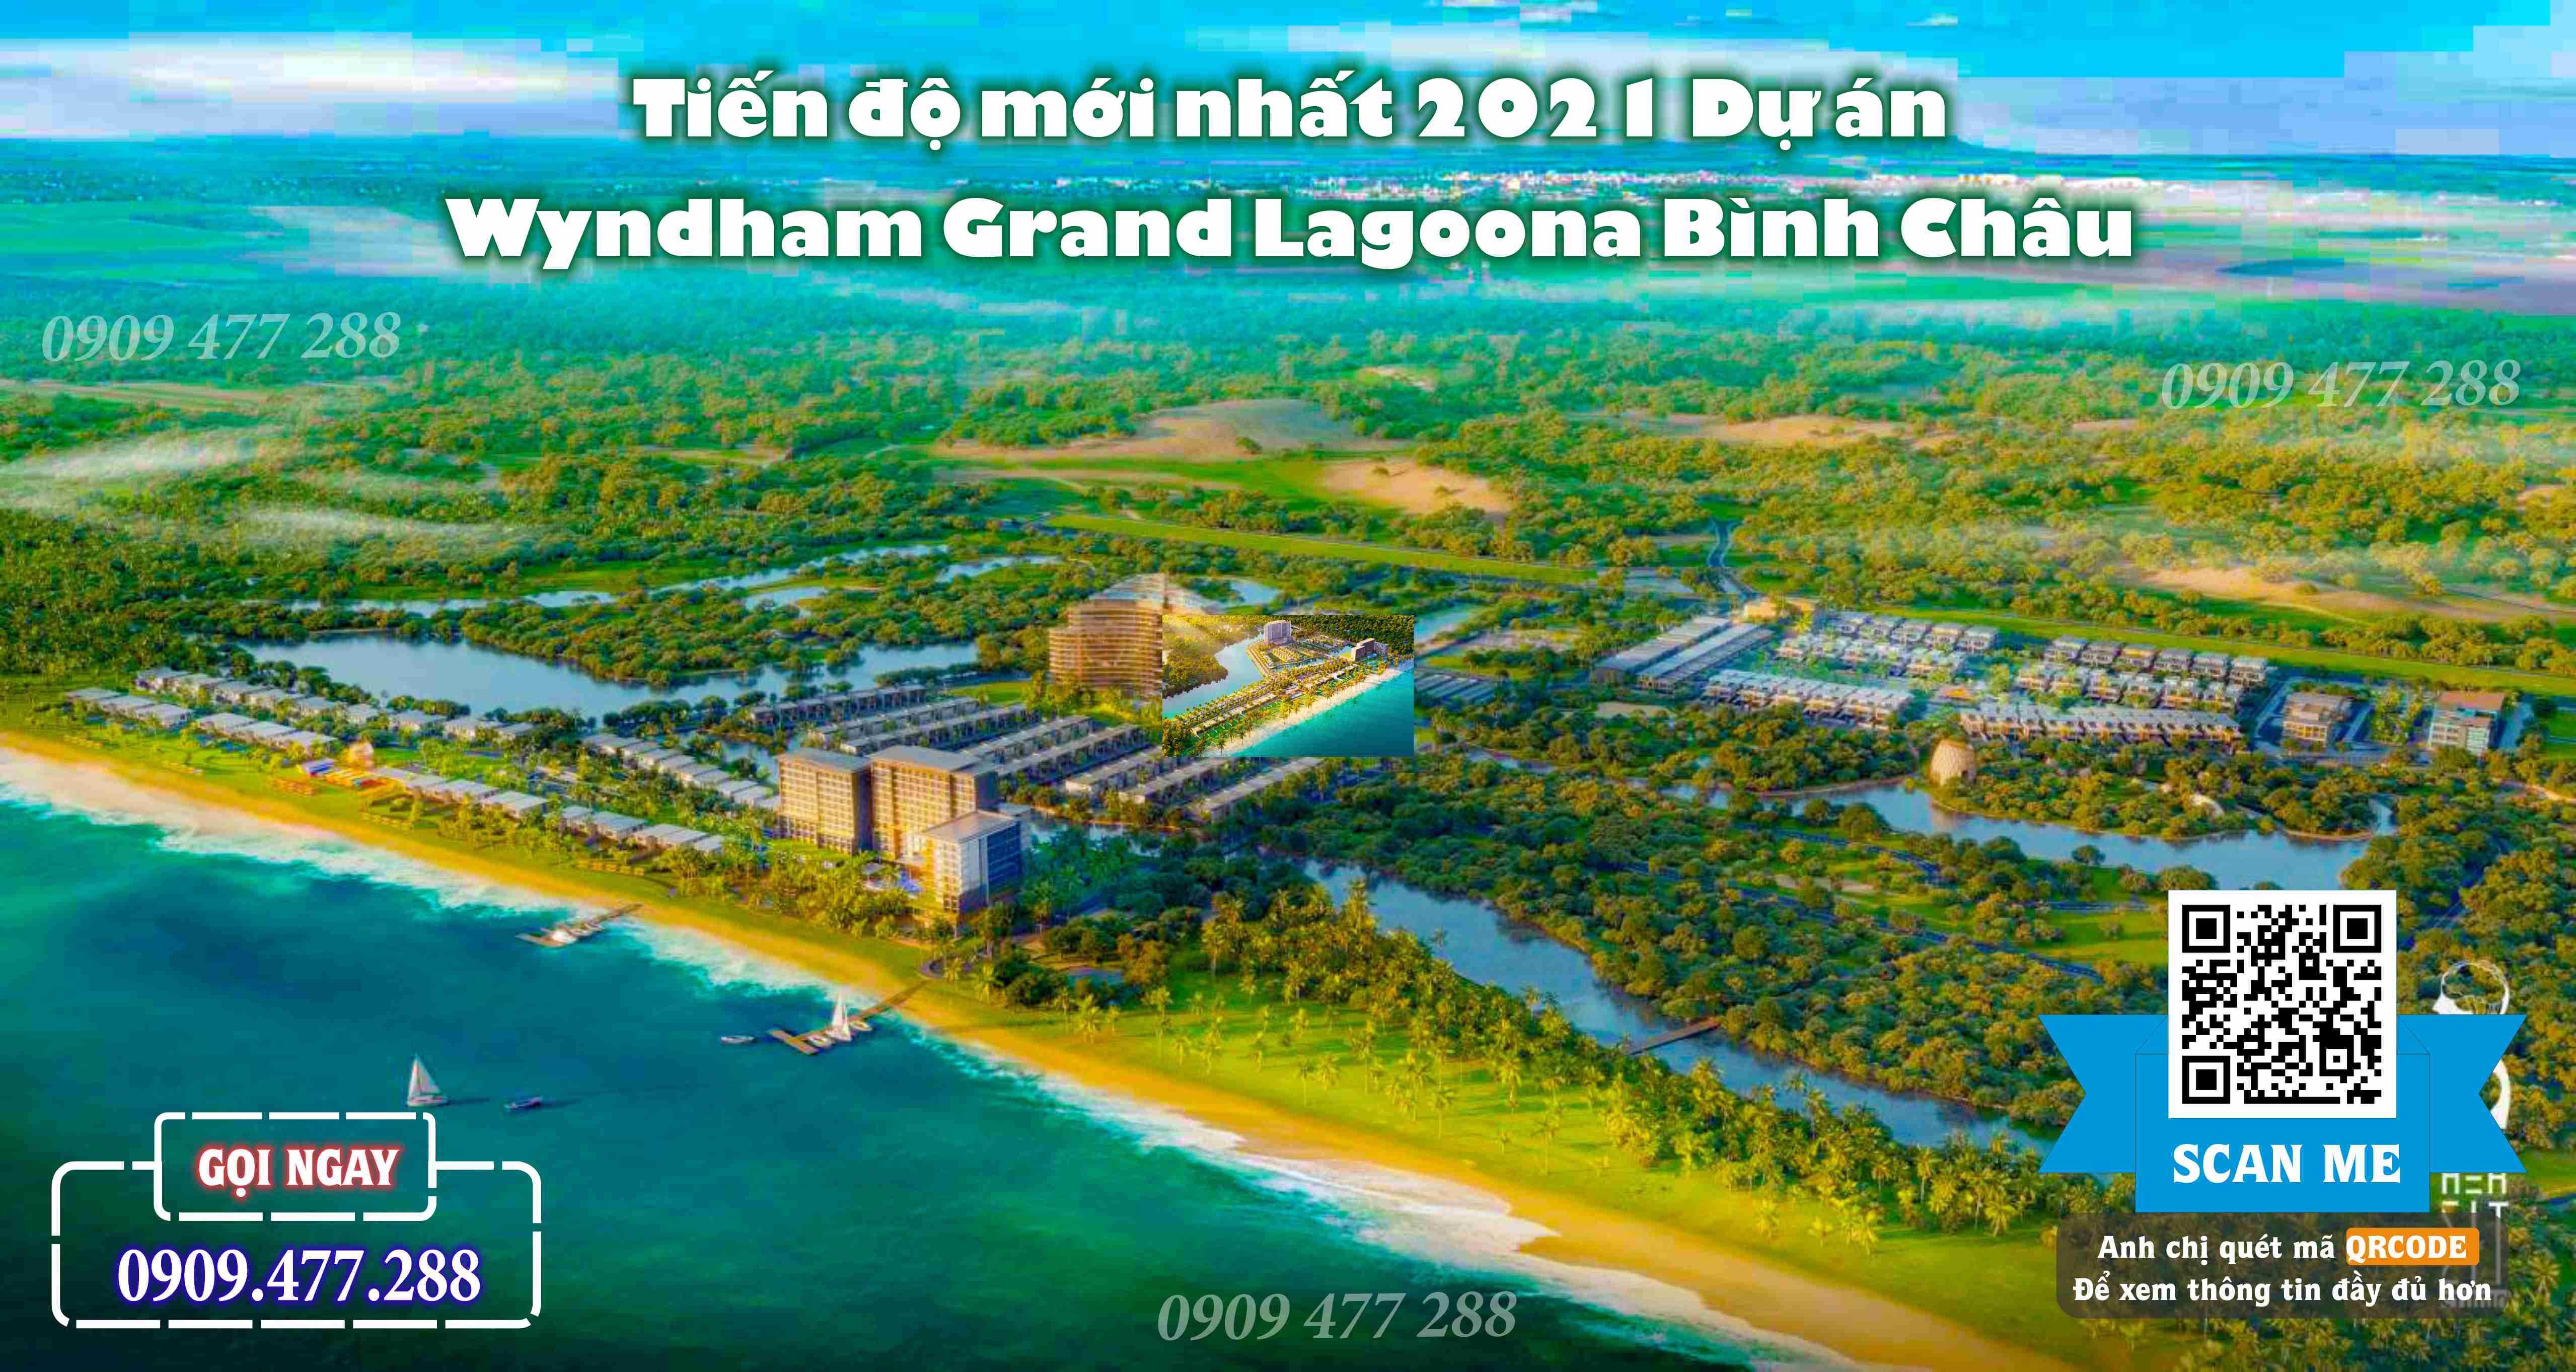 Wyndham Grand Lagoona Bình Châu (7)